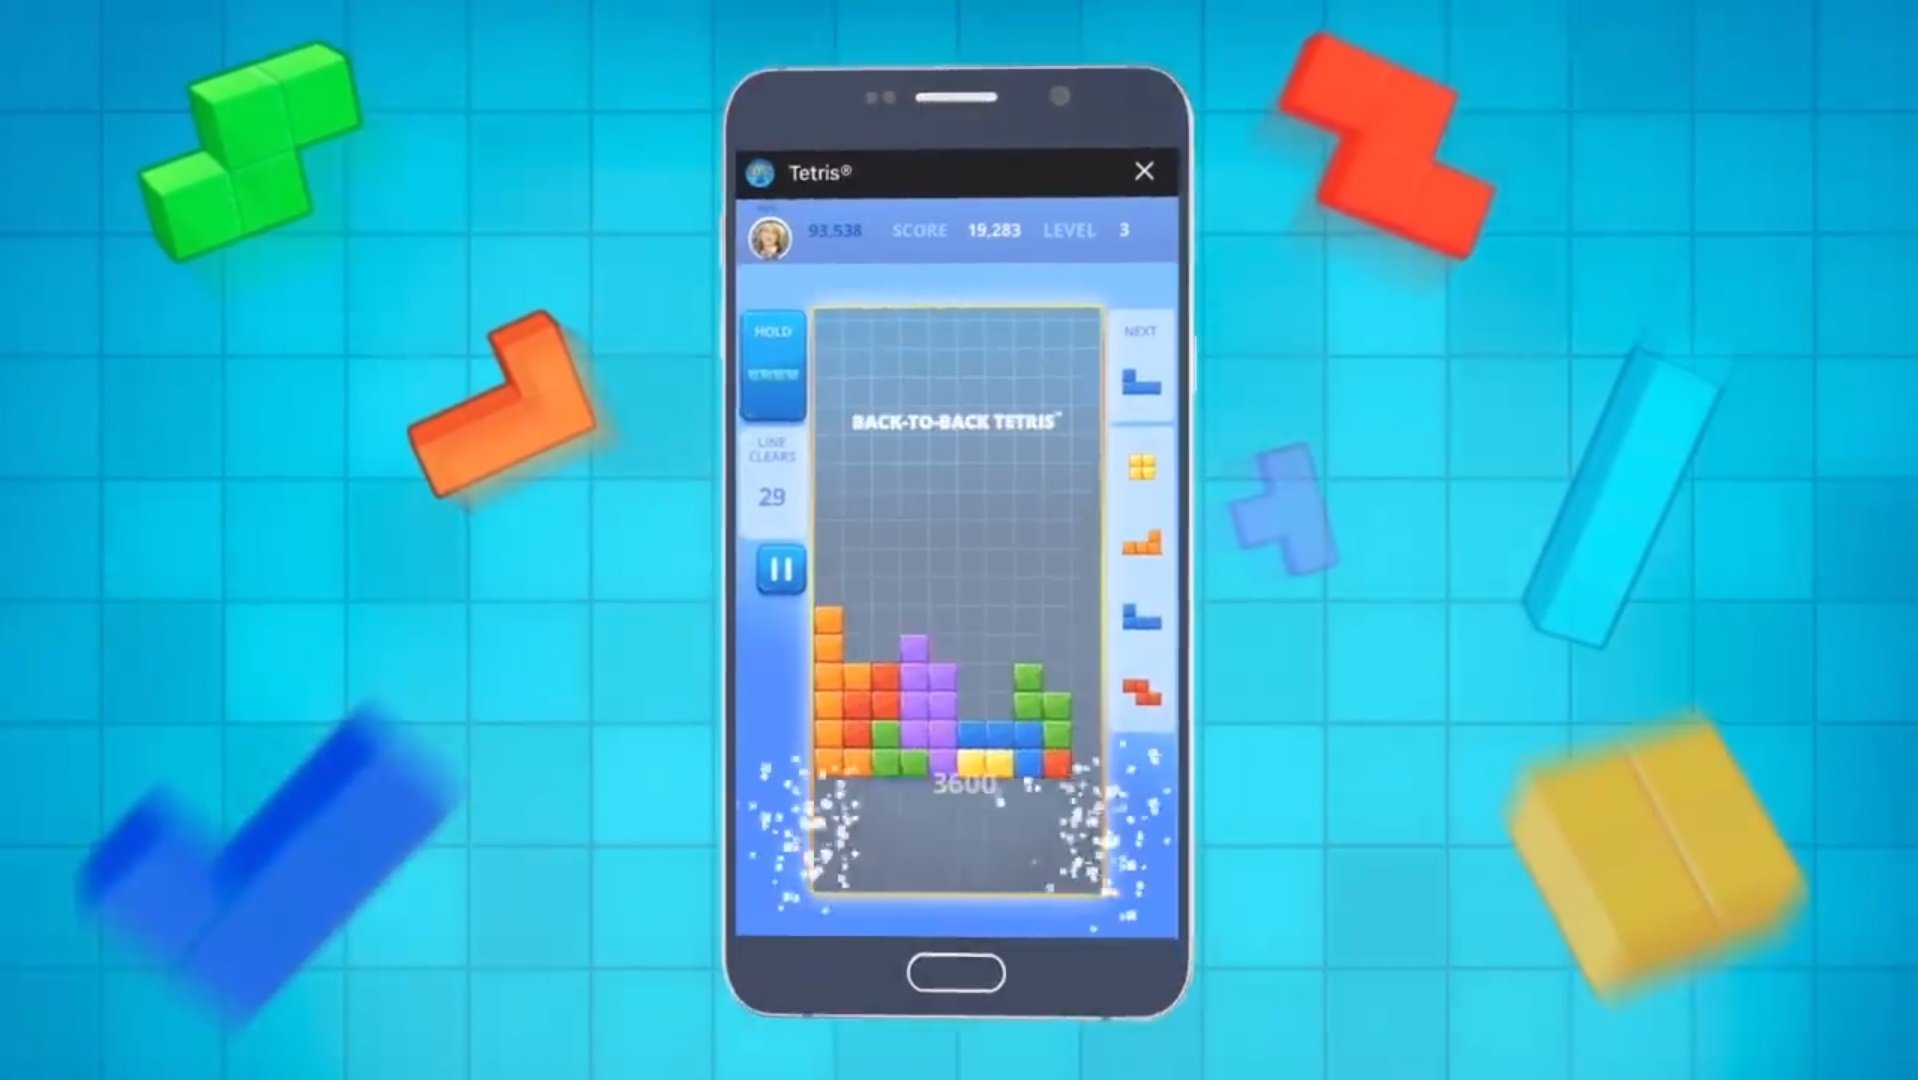 How Do You Like To Play Tetris?